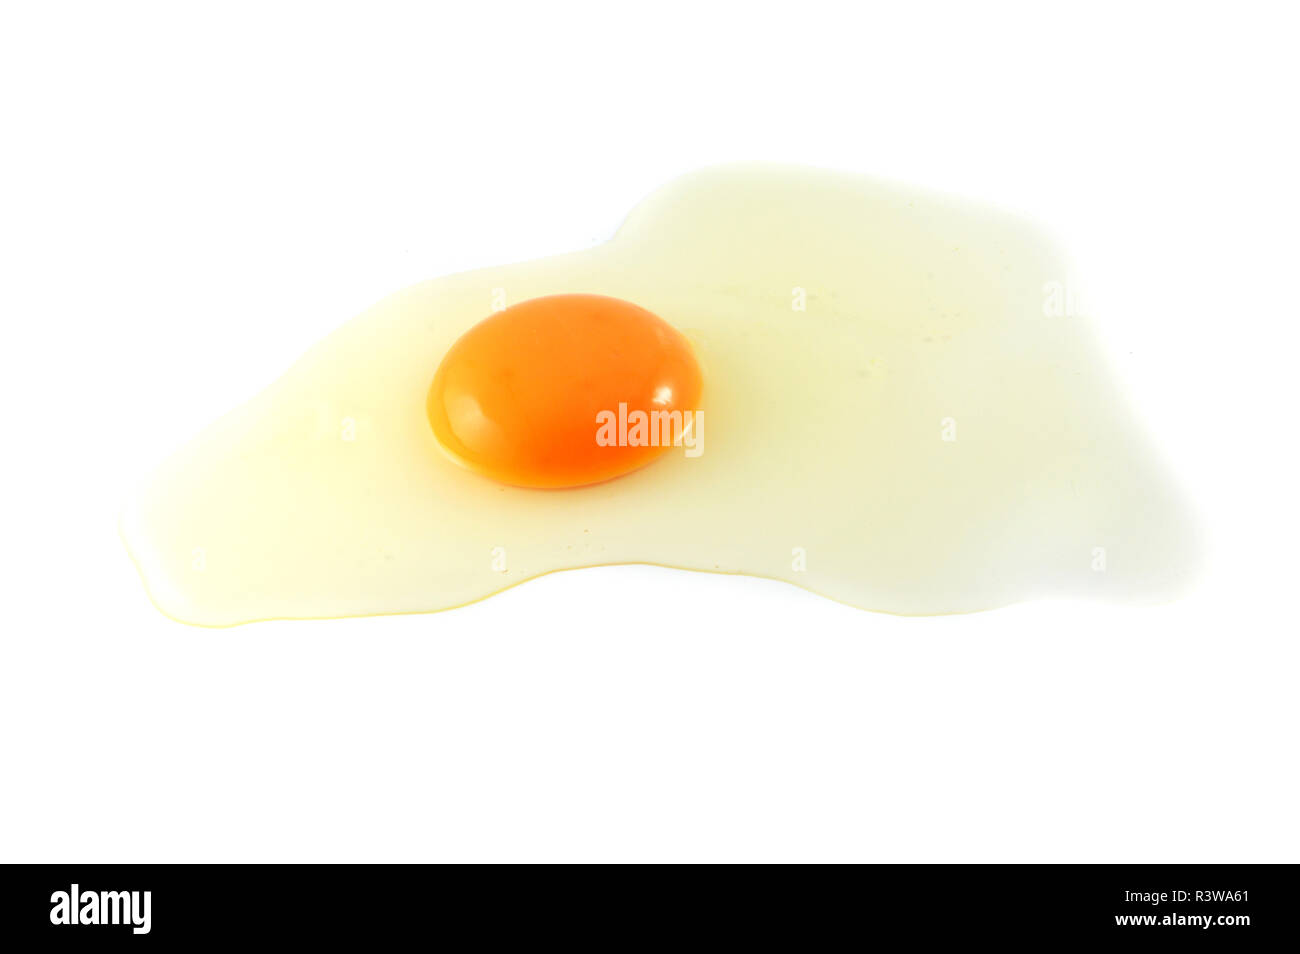 Las yemas de huevo fresco / huevo crudo rompe batir cocinar alimentos aislado sobre fondo blanco - Crack con yemas de huevos de pollo Foto de stock